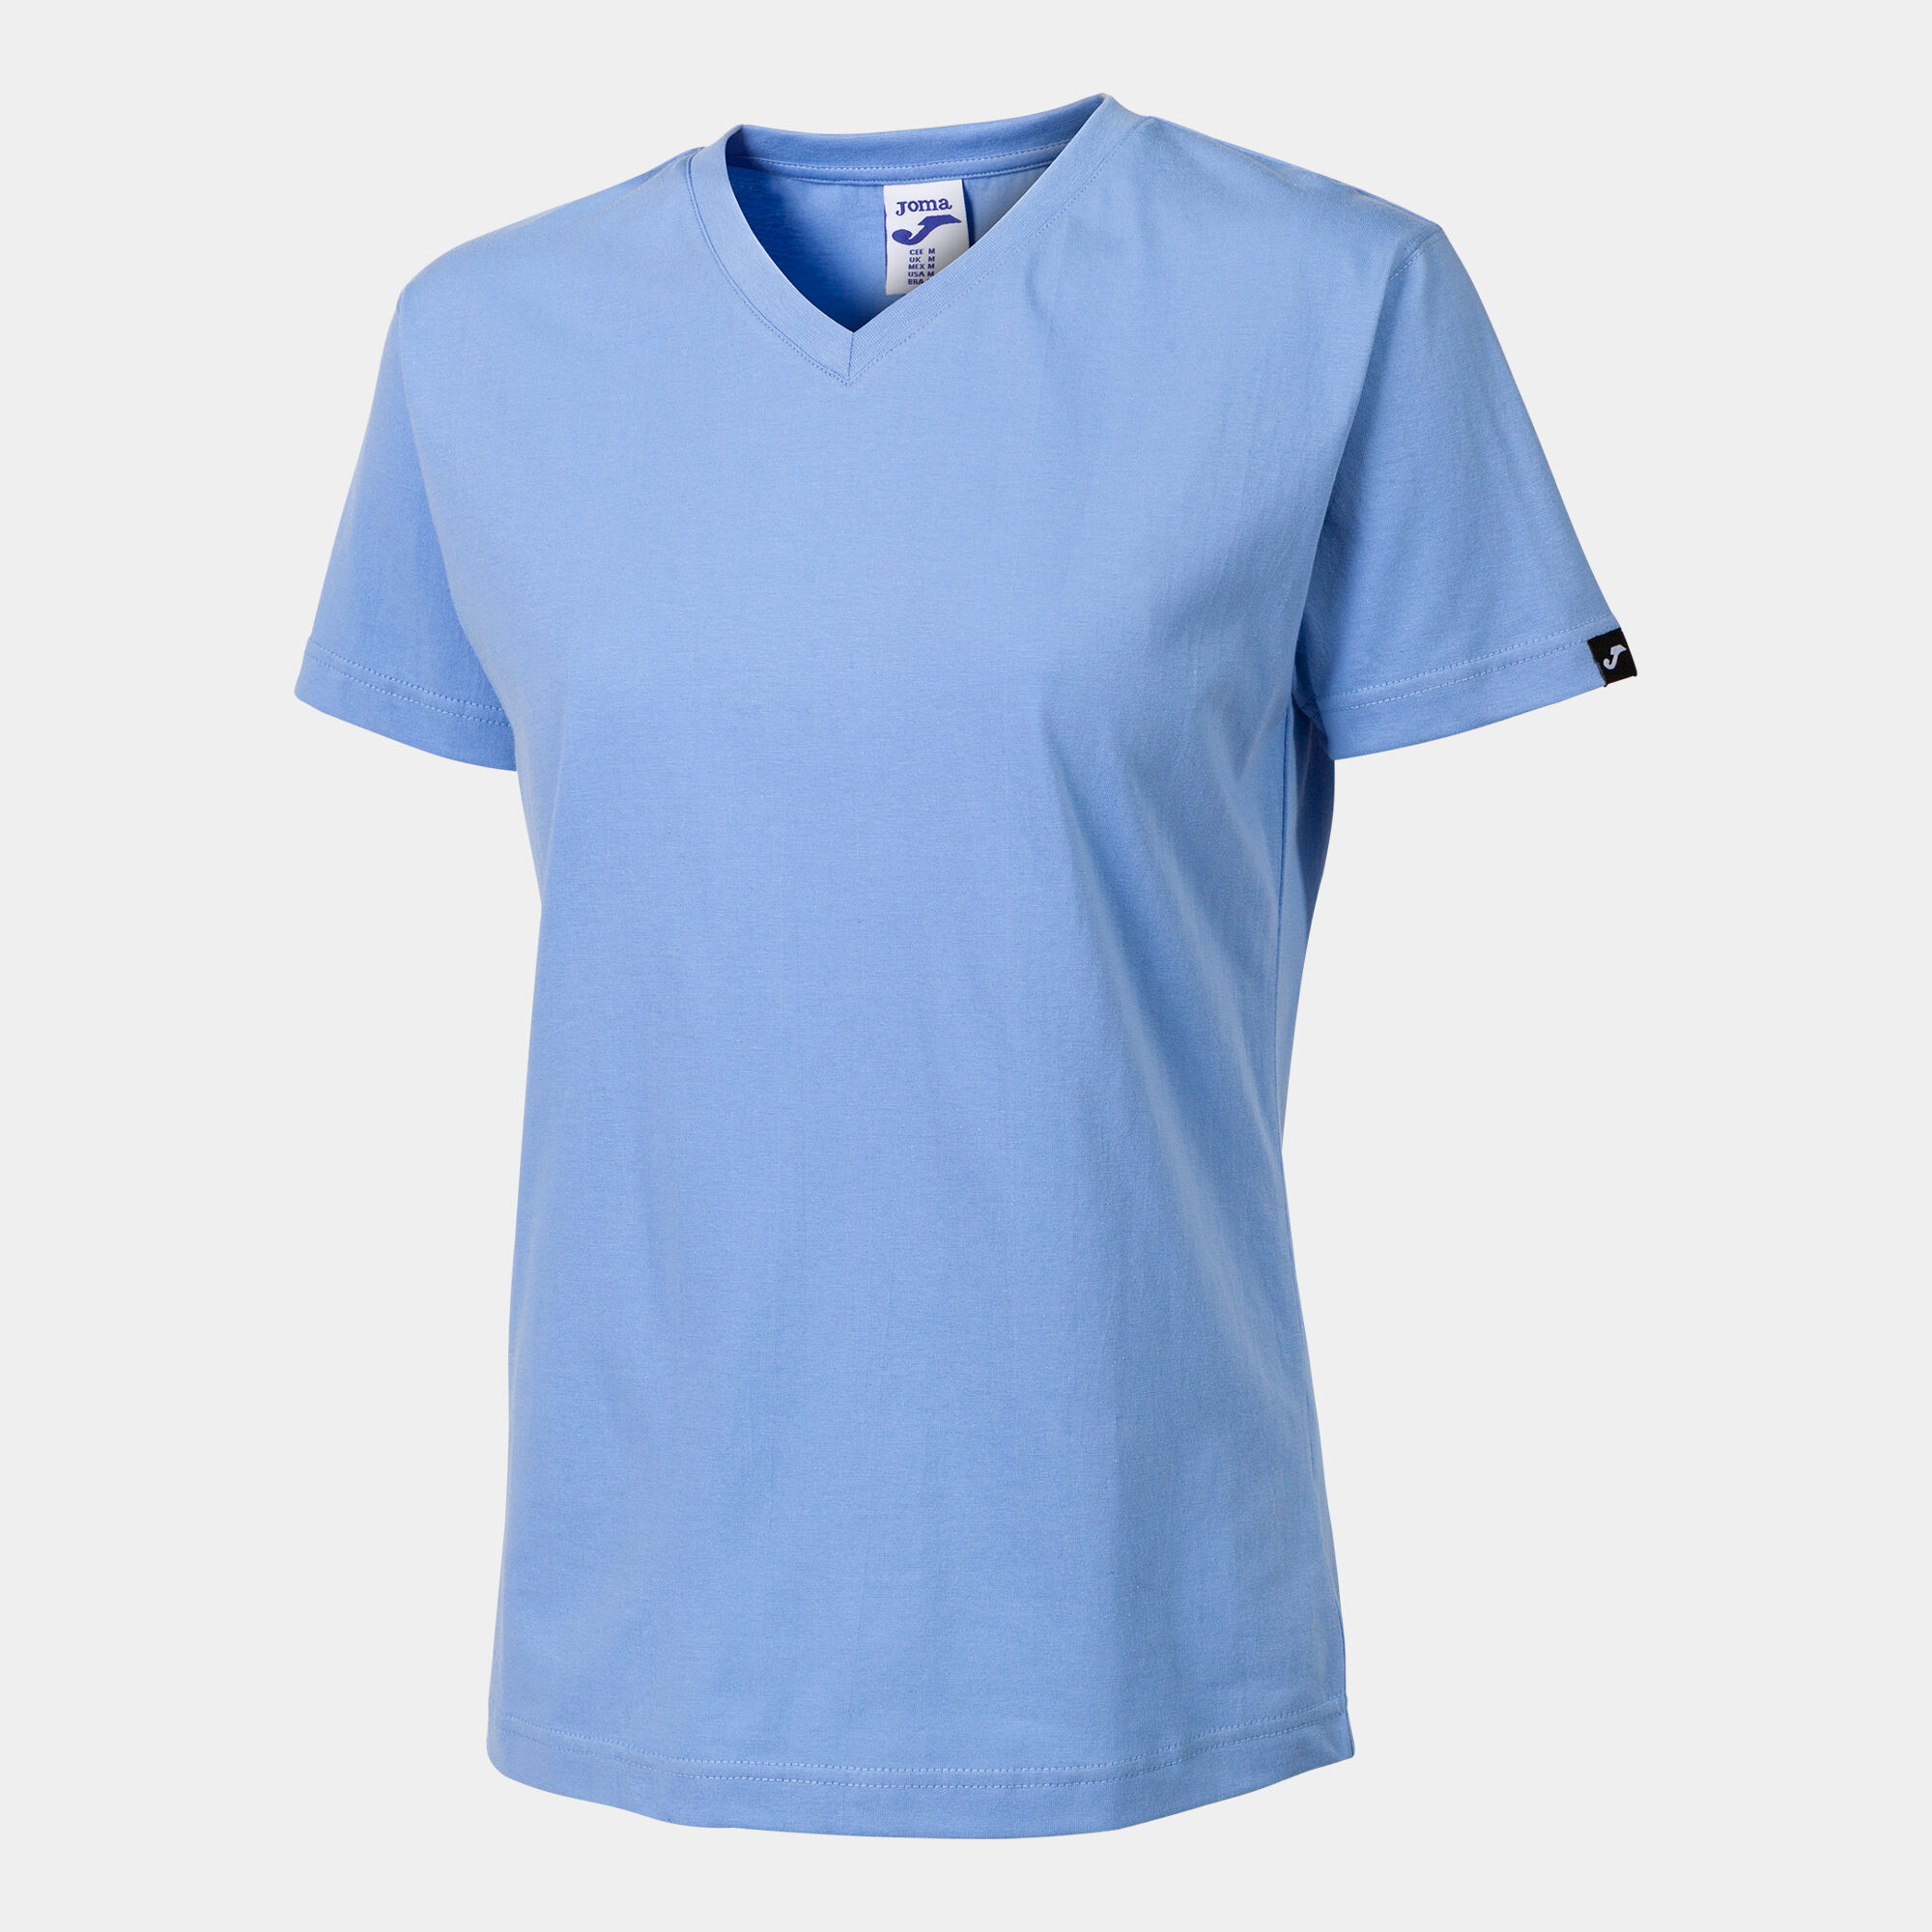 Camiseta manga corta mujer Versalles azul